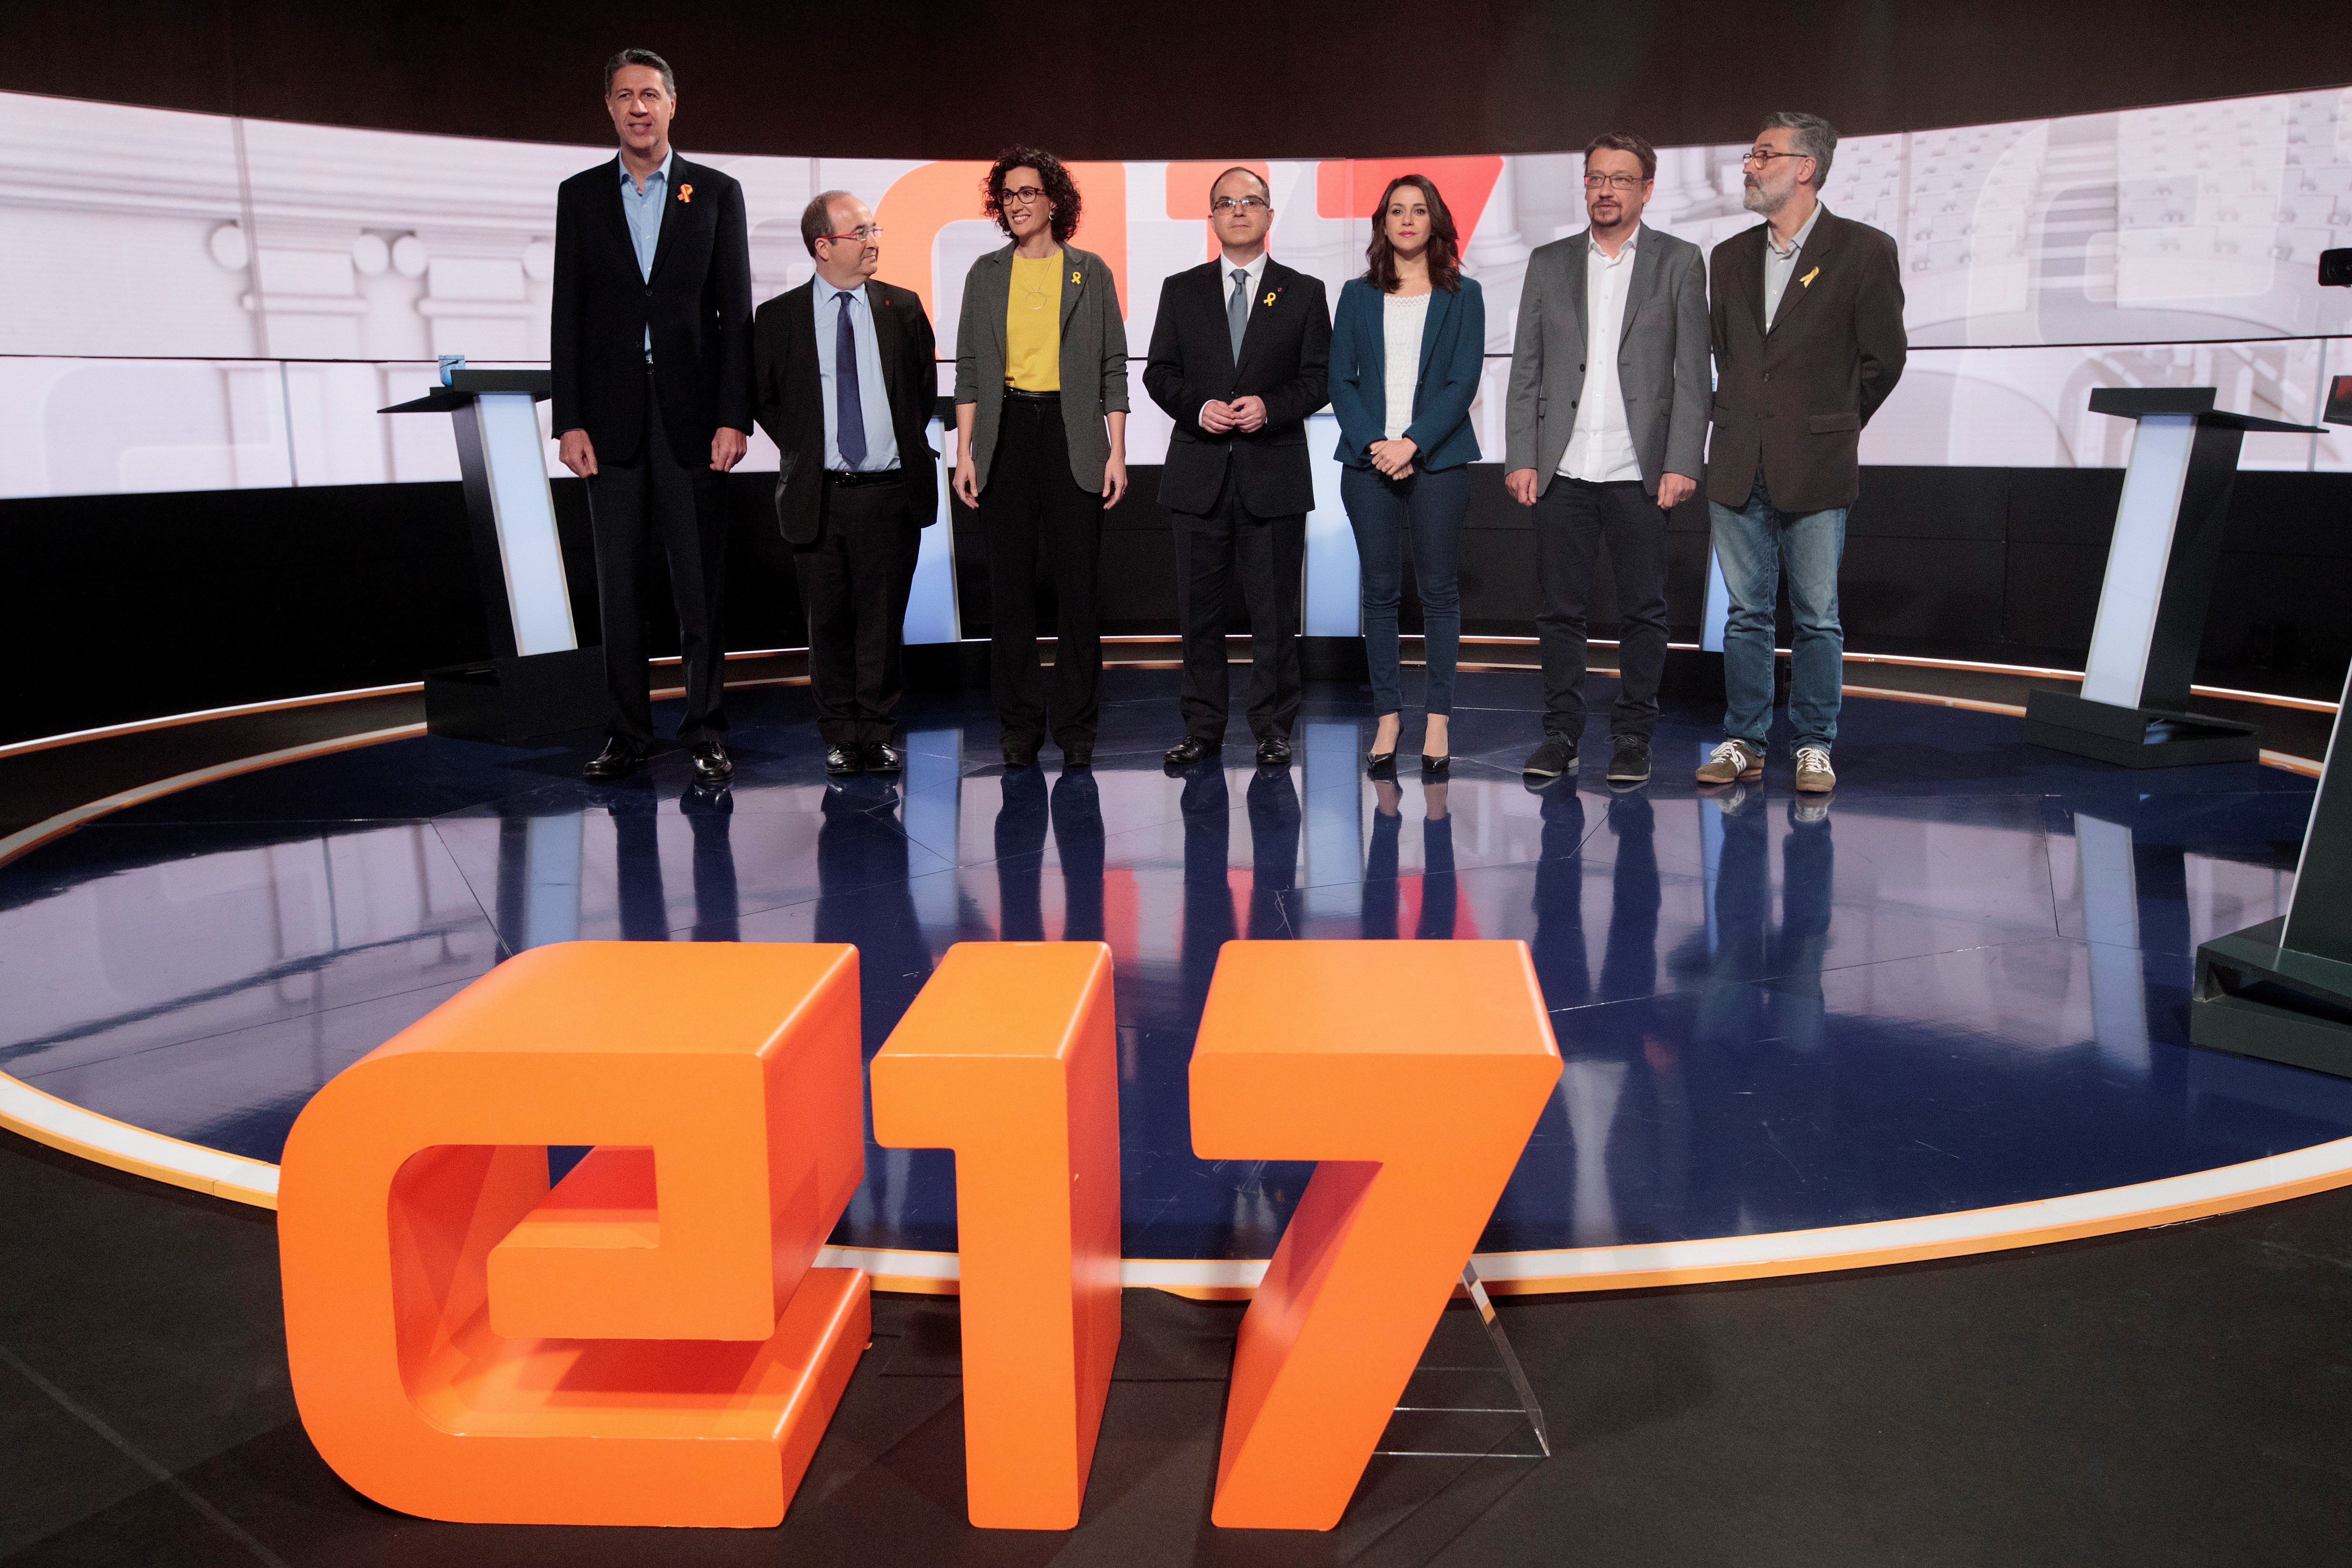 Los candidatos, justo antes de empezar el debate en TV3